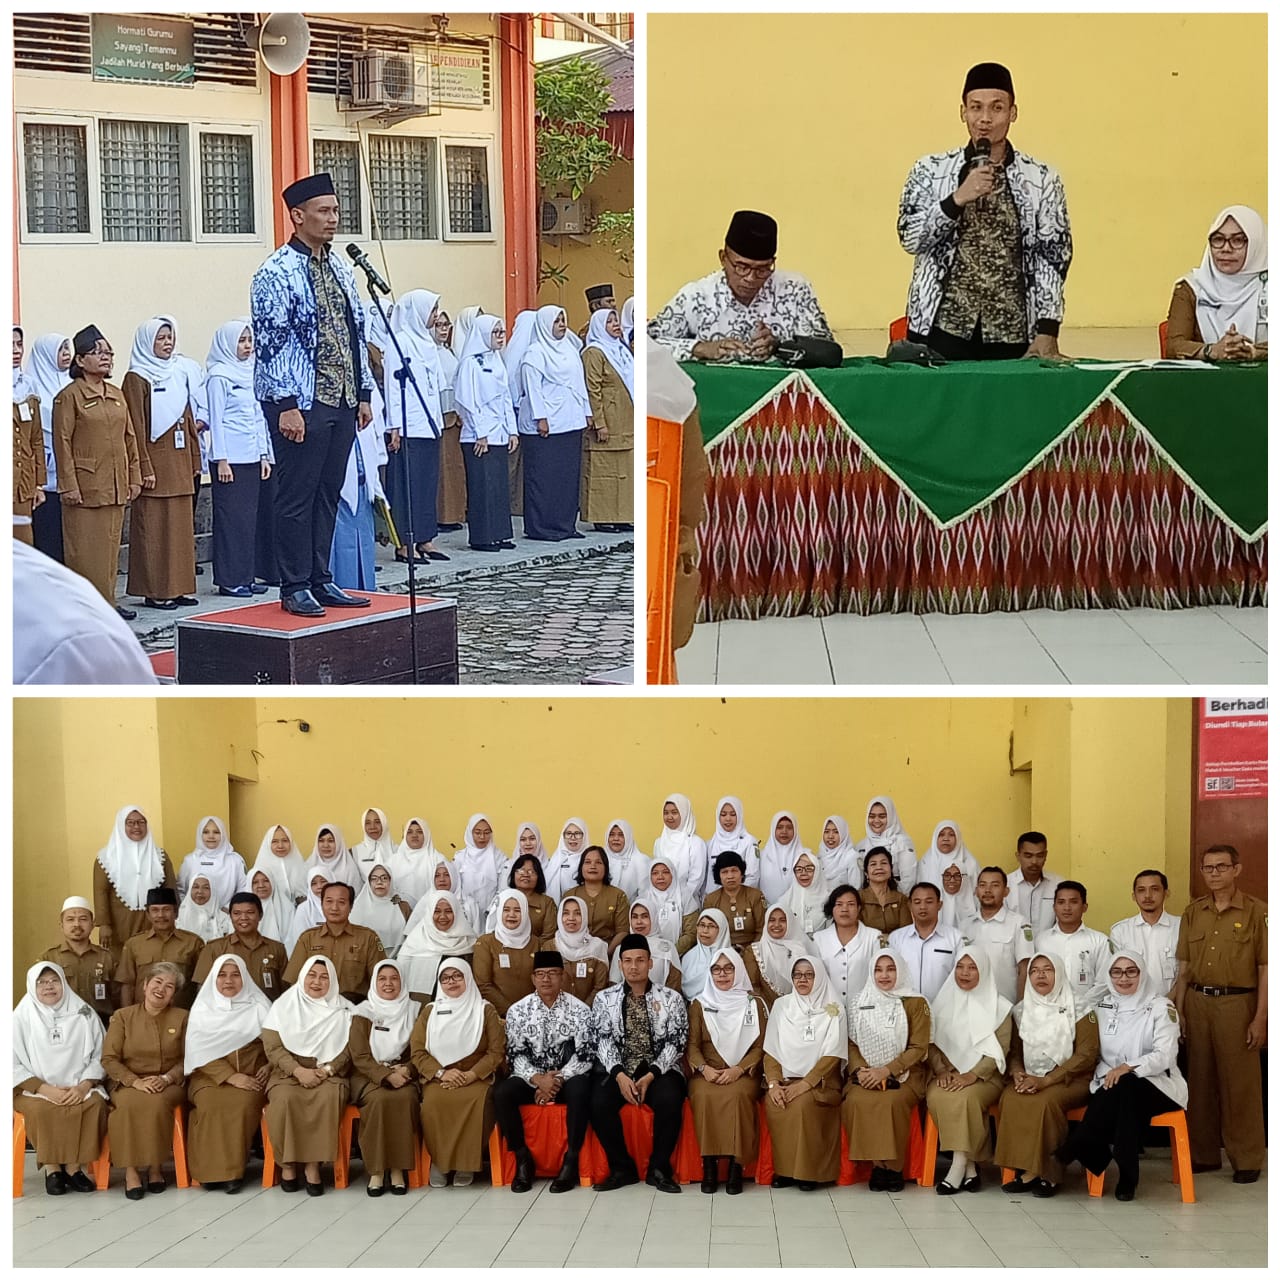 Ketua PGRI Jadi Pembina Upacara di SMKN 3 Pekanbaru, LKBH PGRI: Tiga Kasus Ini yang Bisa Pidanakan Guru